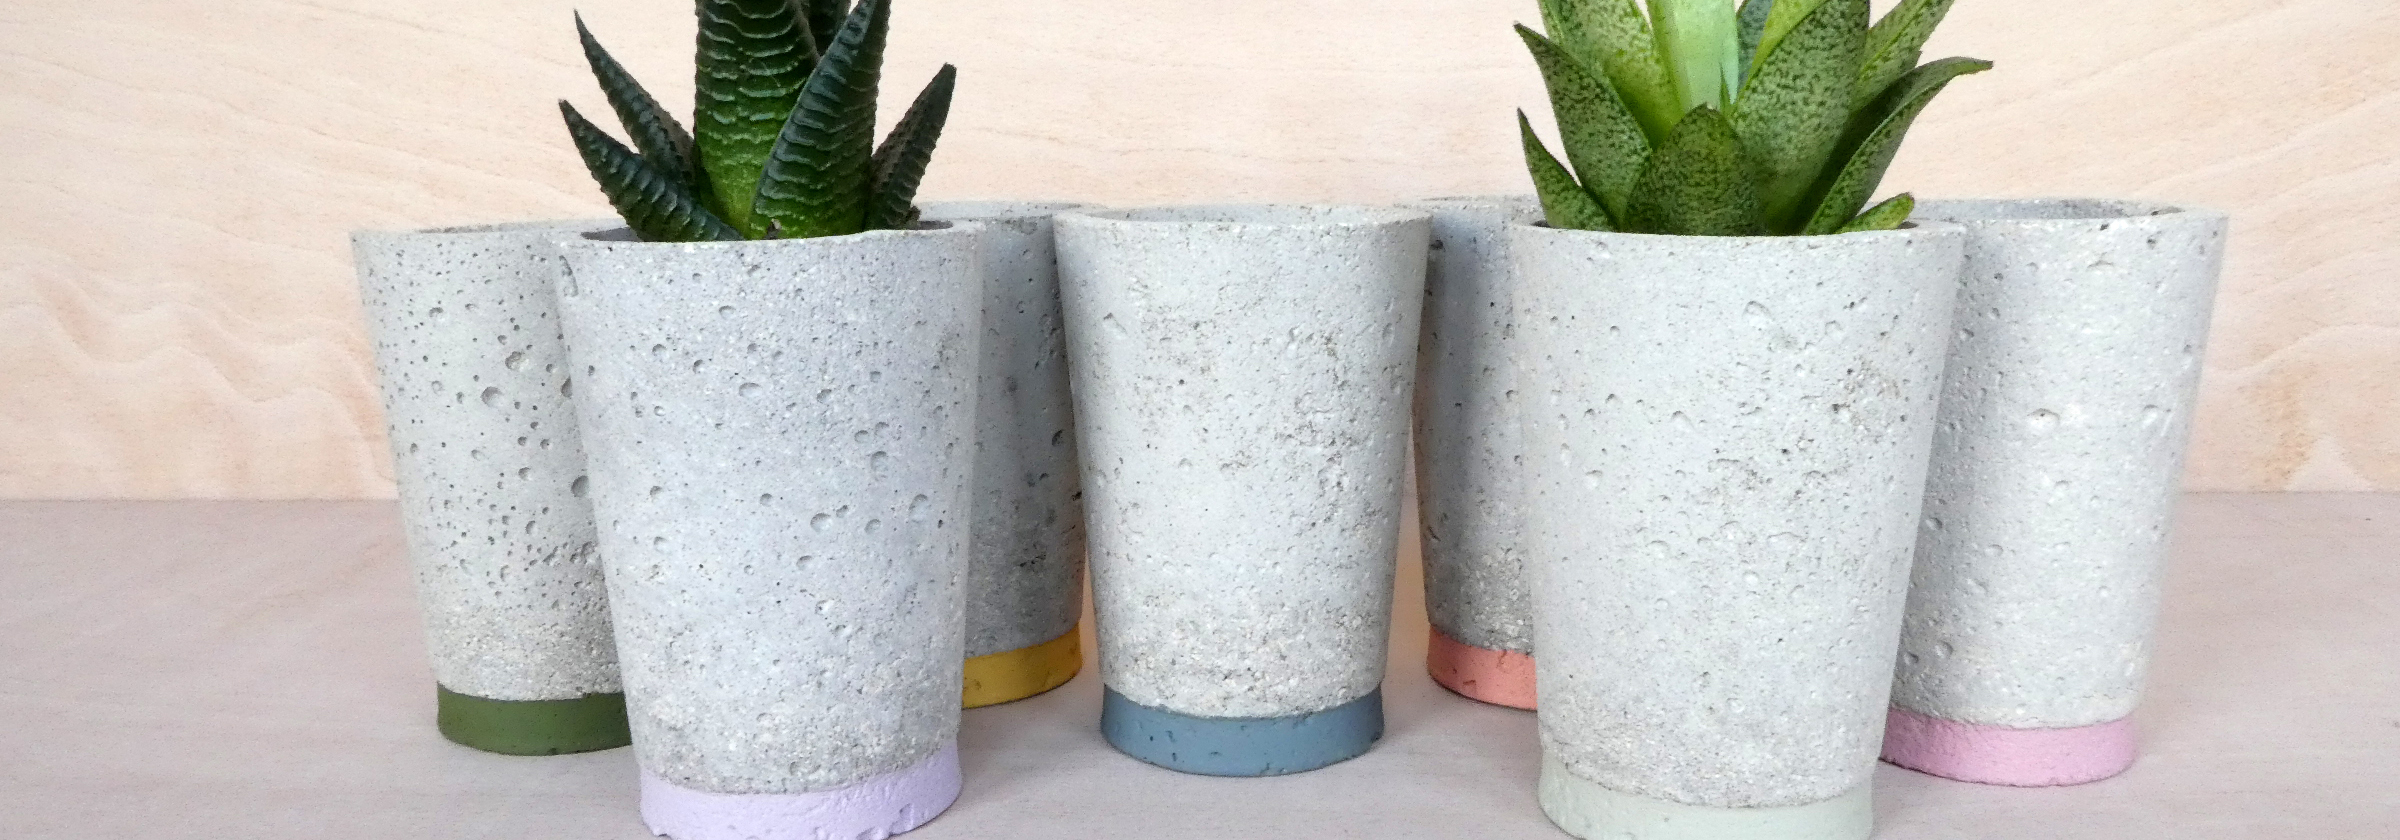 Five concrete plant pots, with plants in